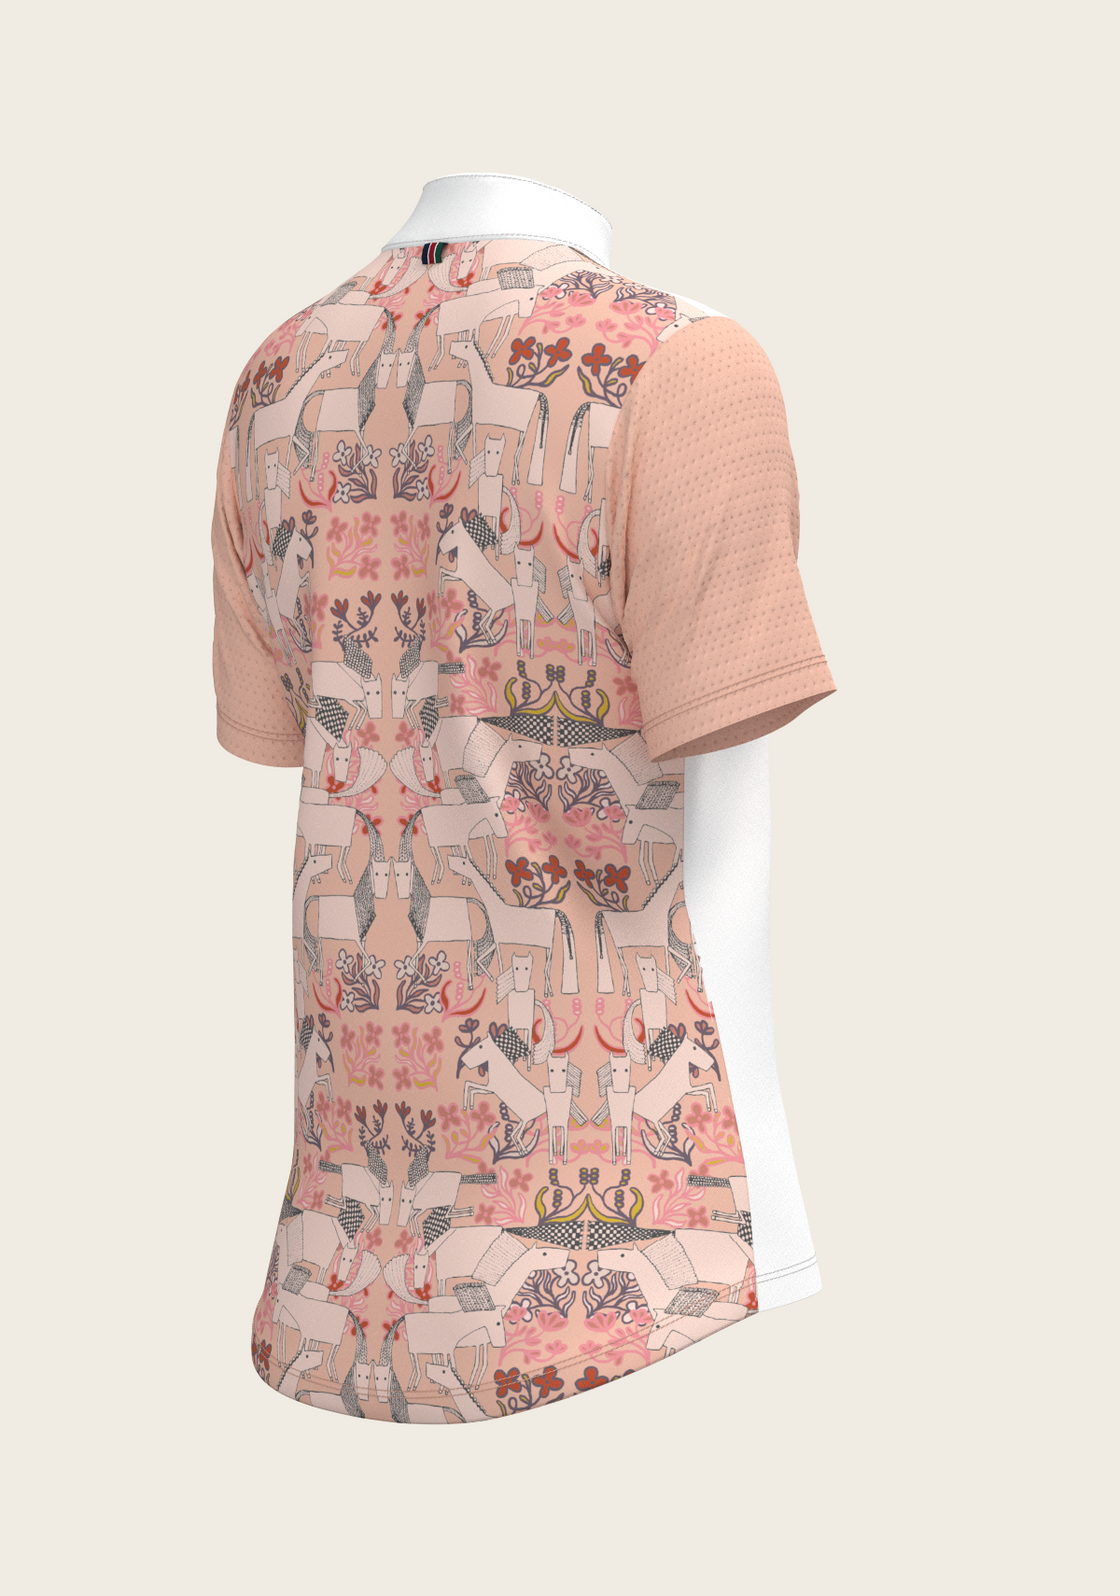  Maze on Peach Long Pleated Short Sleeve Show Shirt